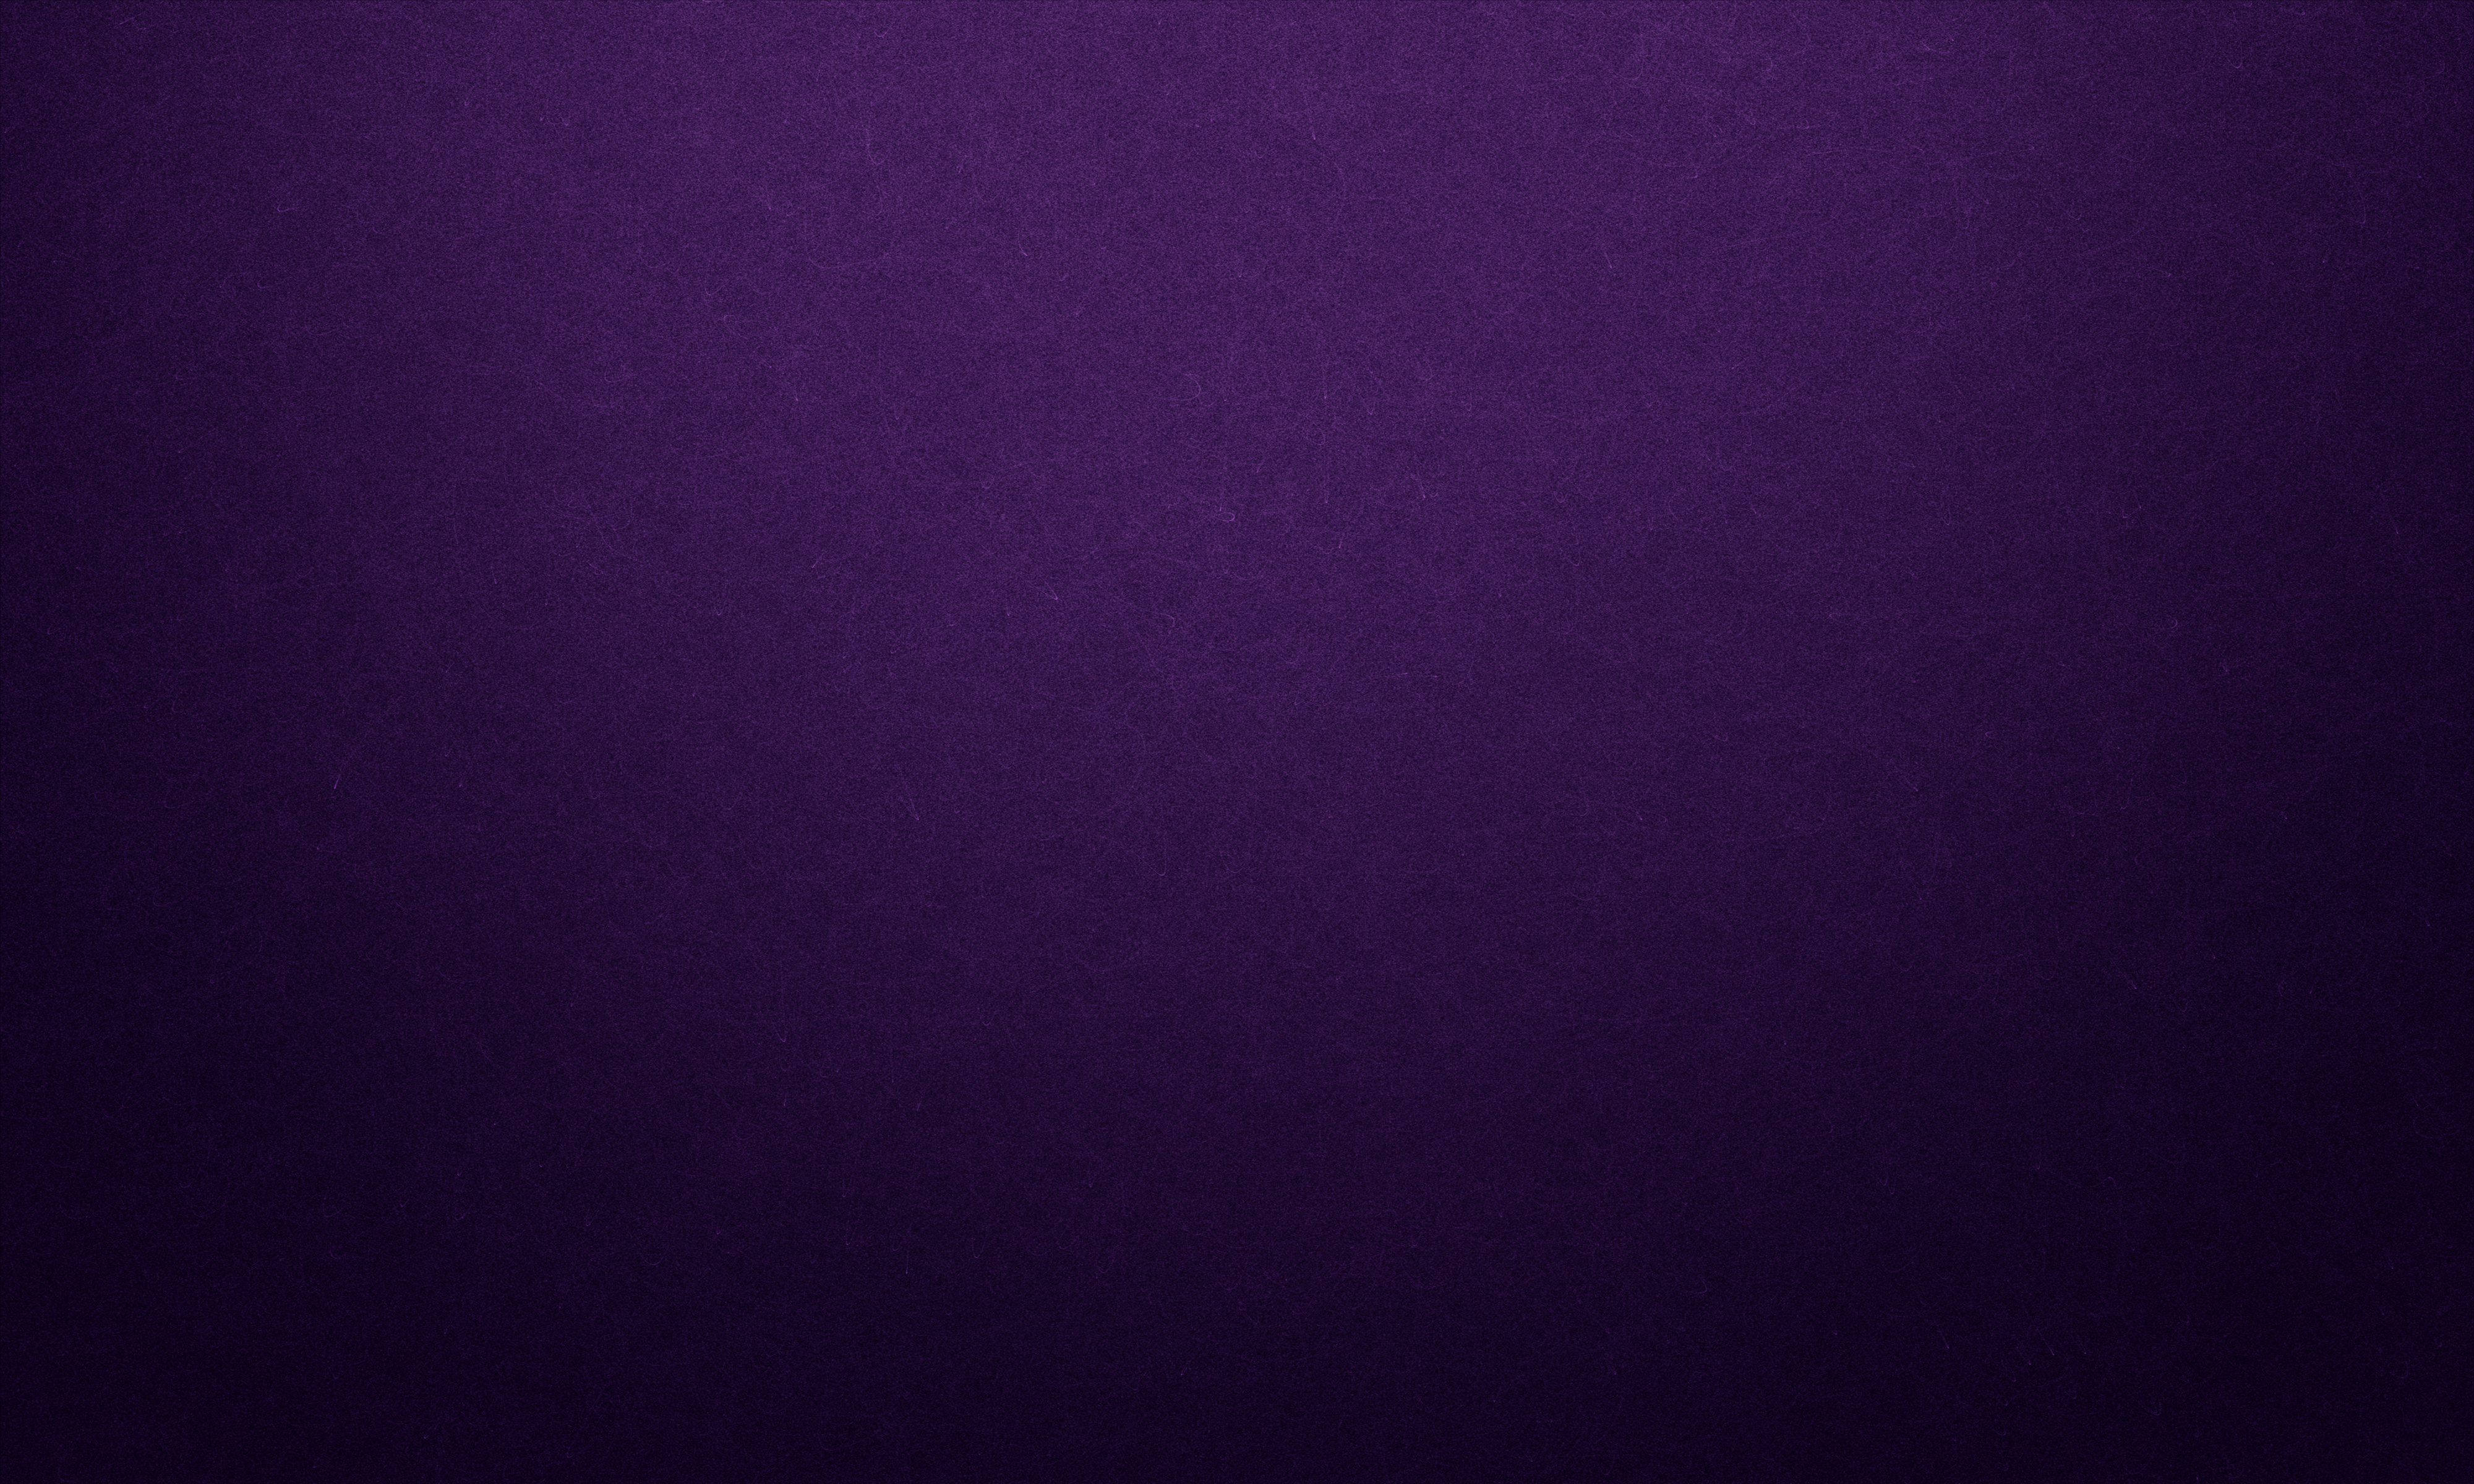 Abstract dark violet grunge Background